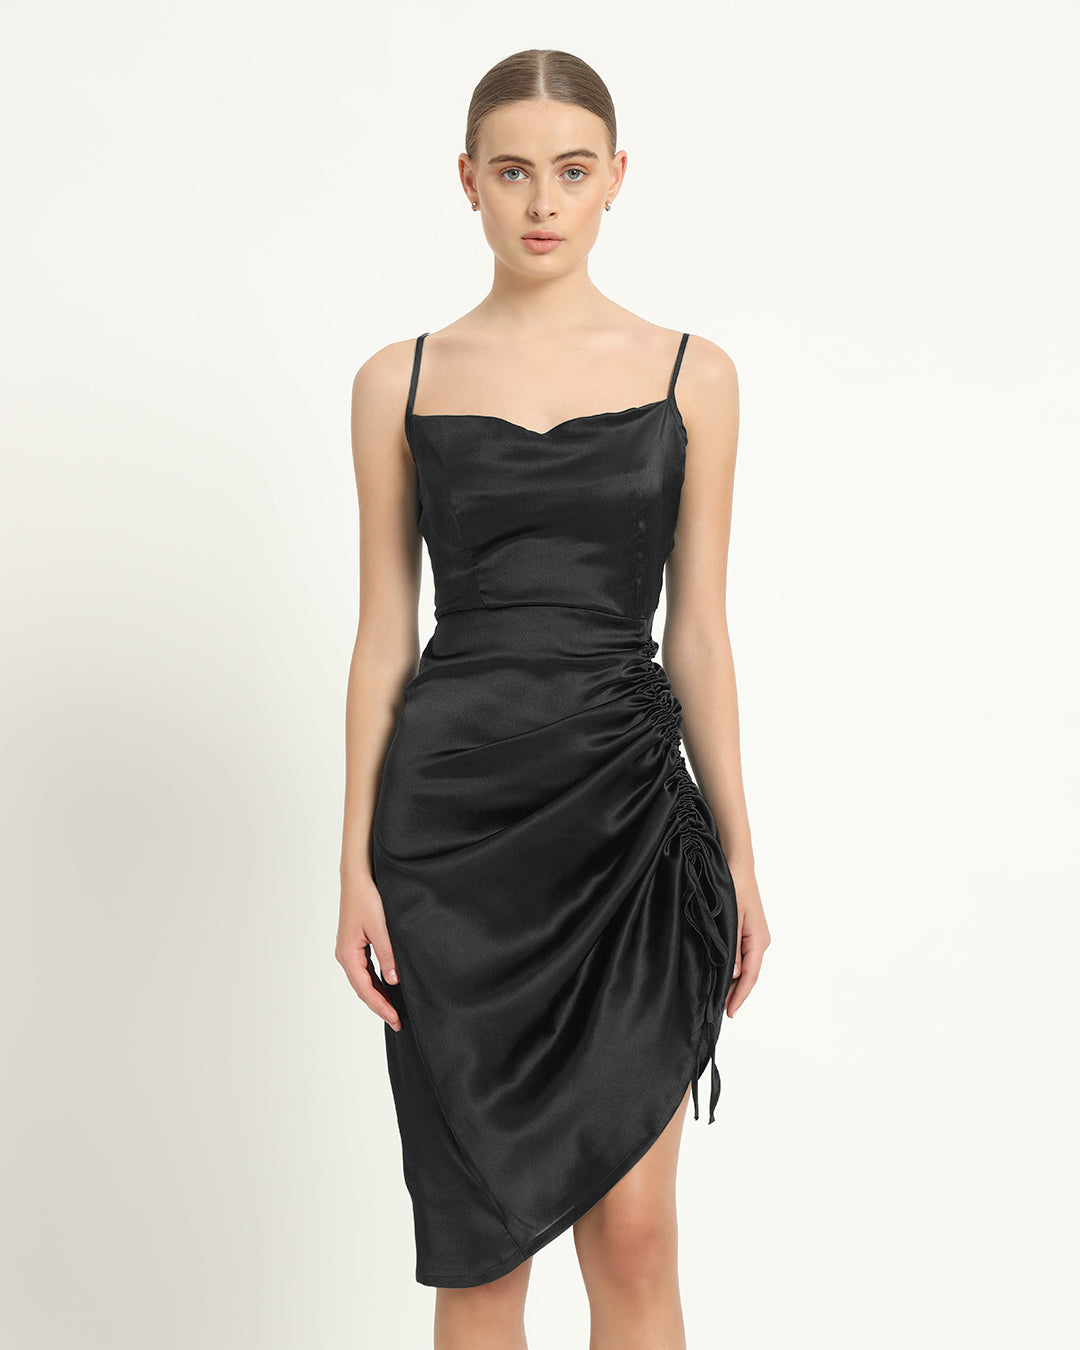 Satin Ruche Asymmetrical Black Dress